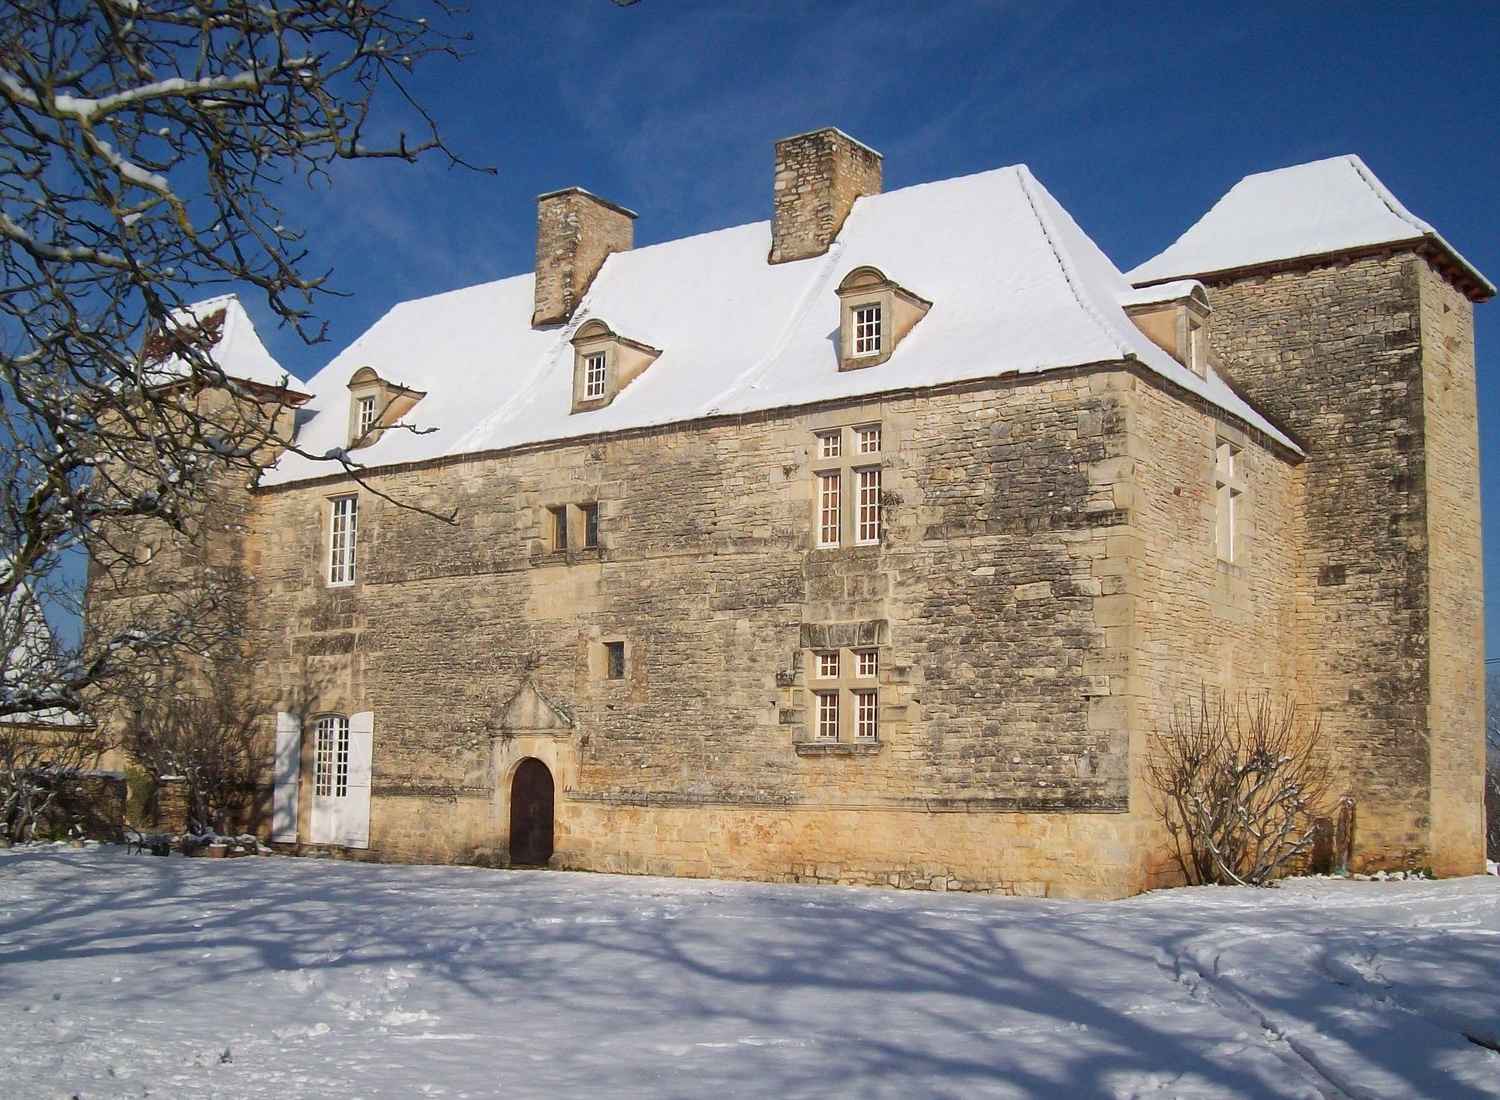 Venez découvrir les "Noëlies enchantées" dans le cadre du Château de Lantis !